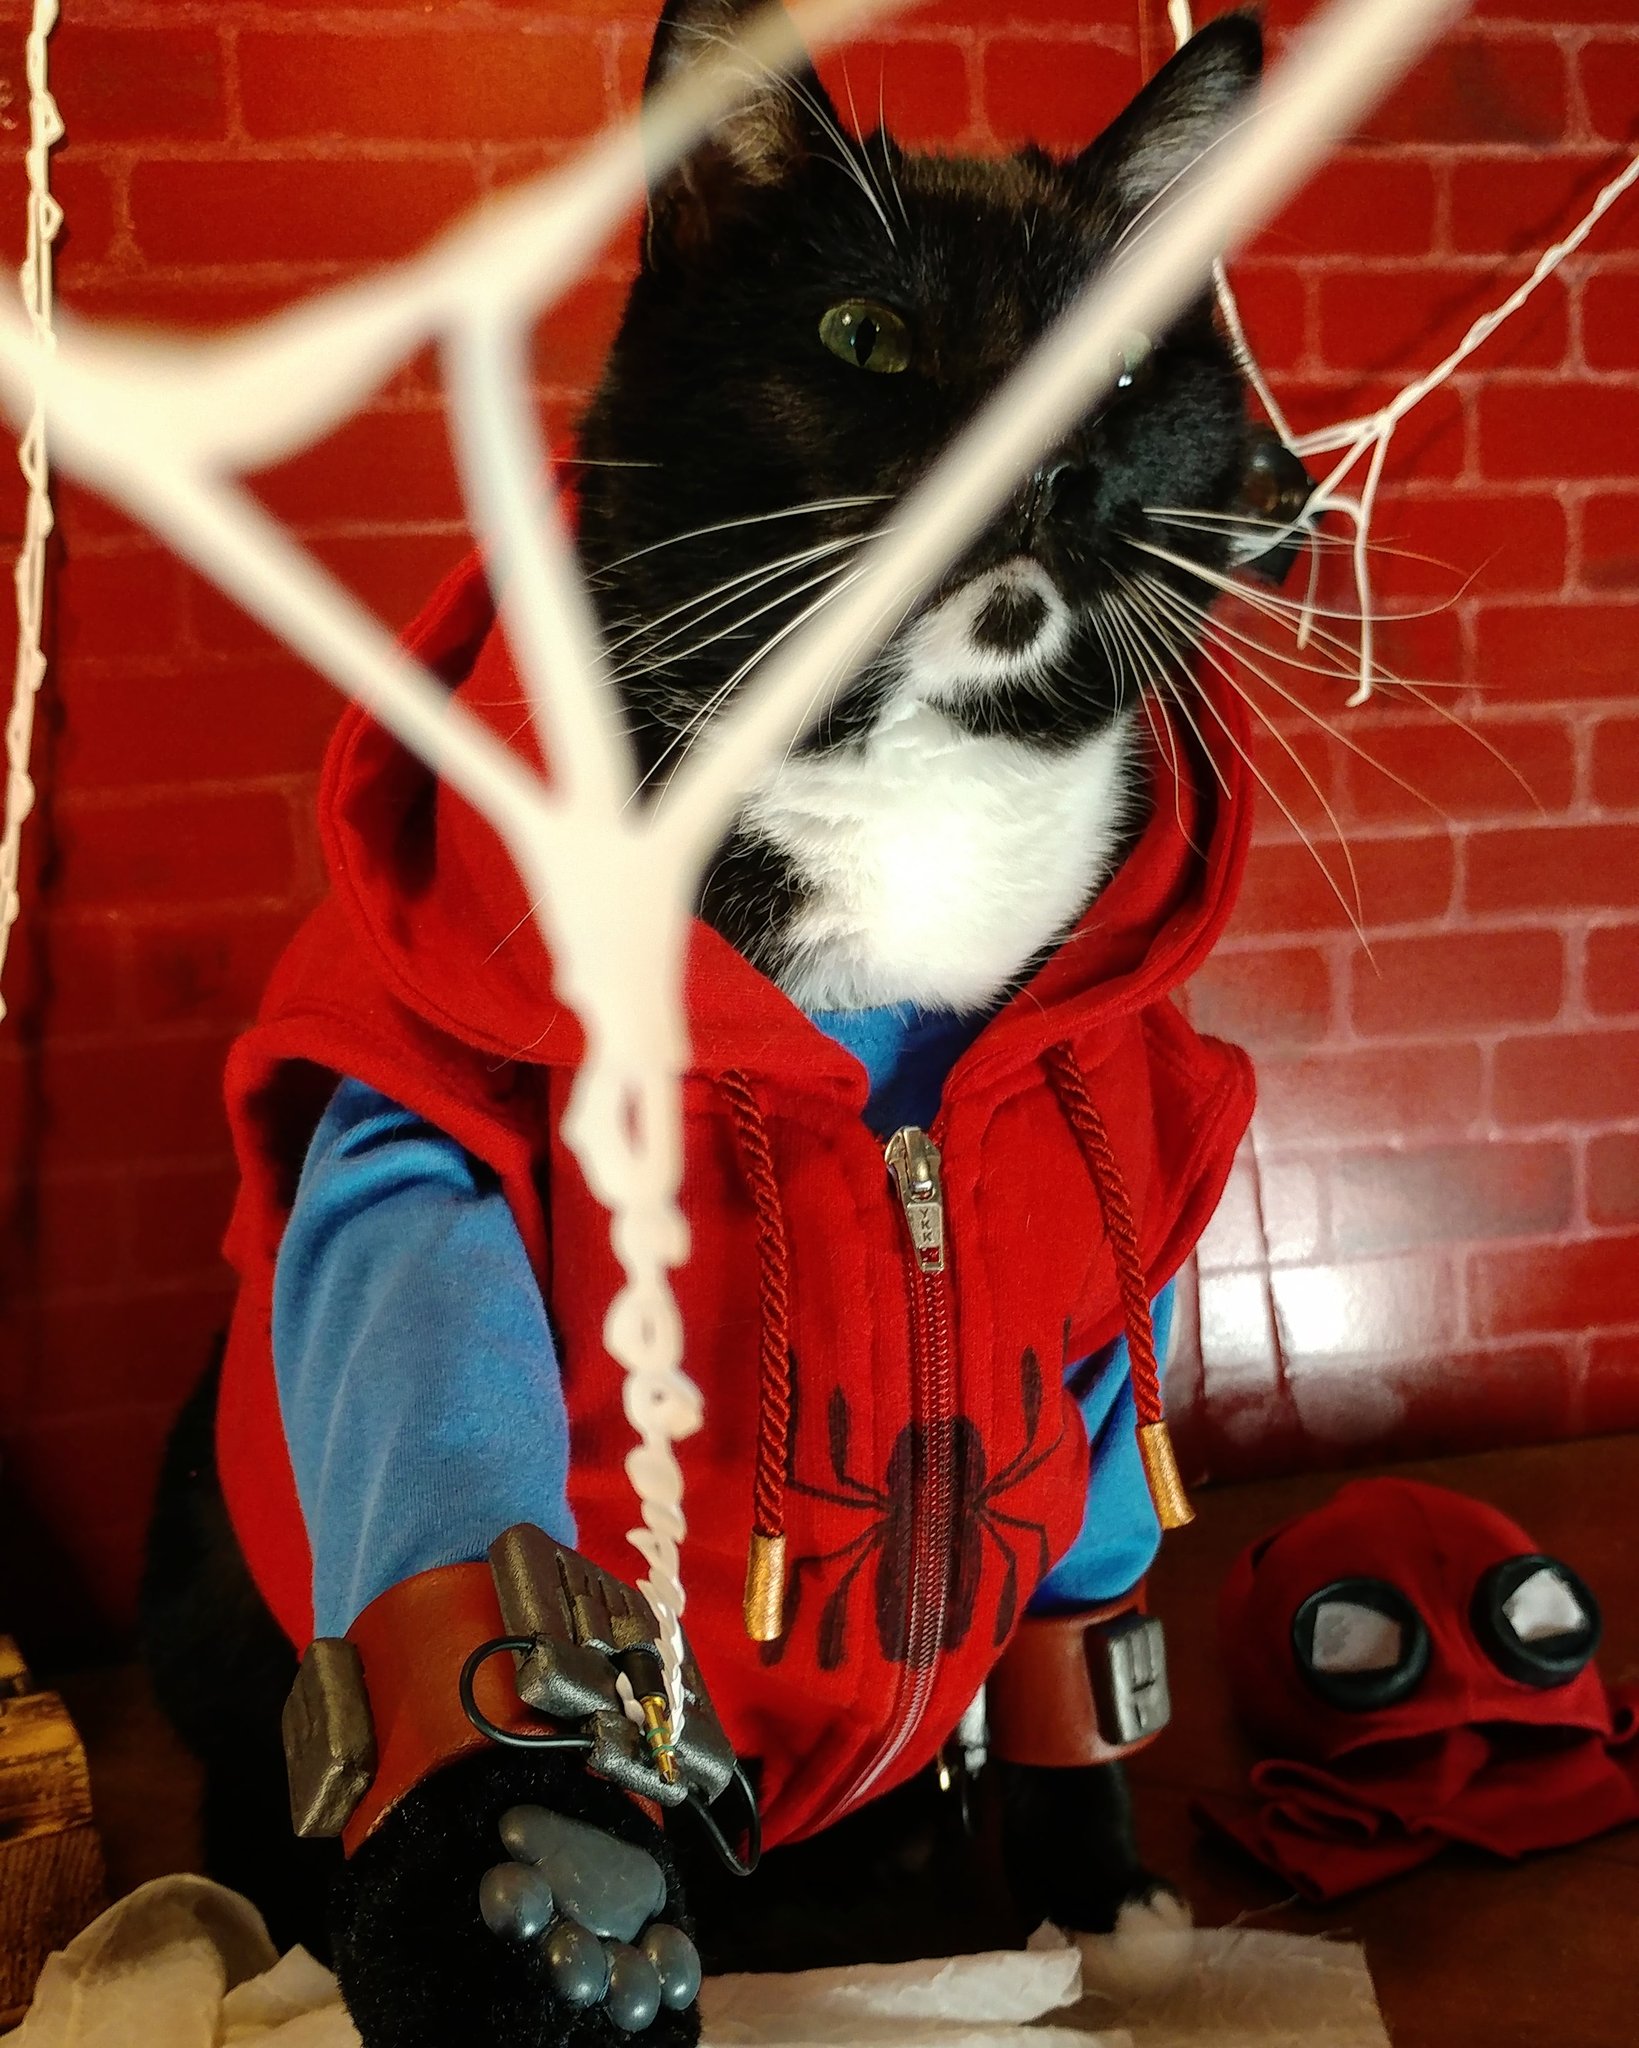 Галерея Милый косплей: кот примерил образы Человека-паука, Константина и других героев - 12 фото